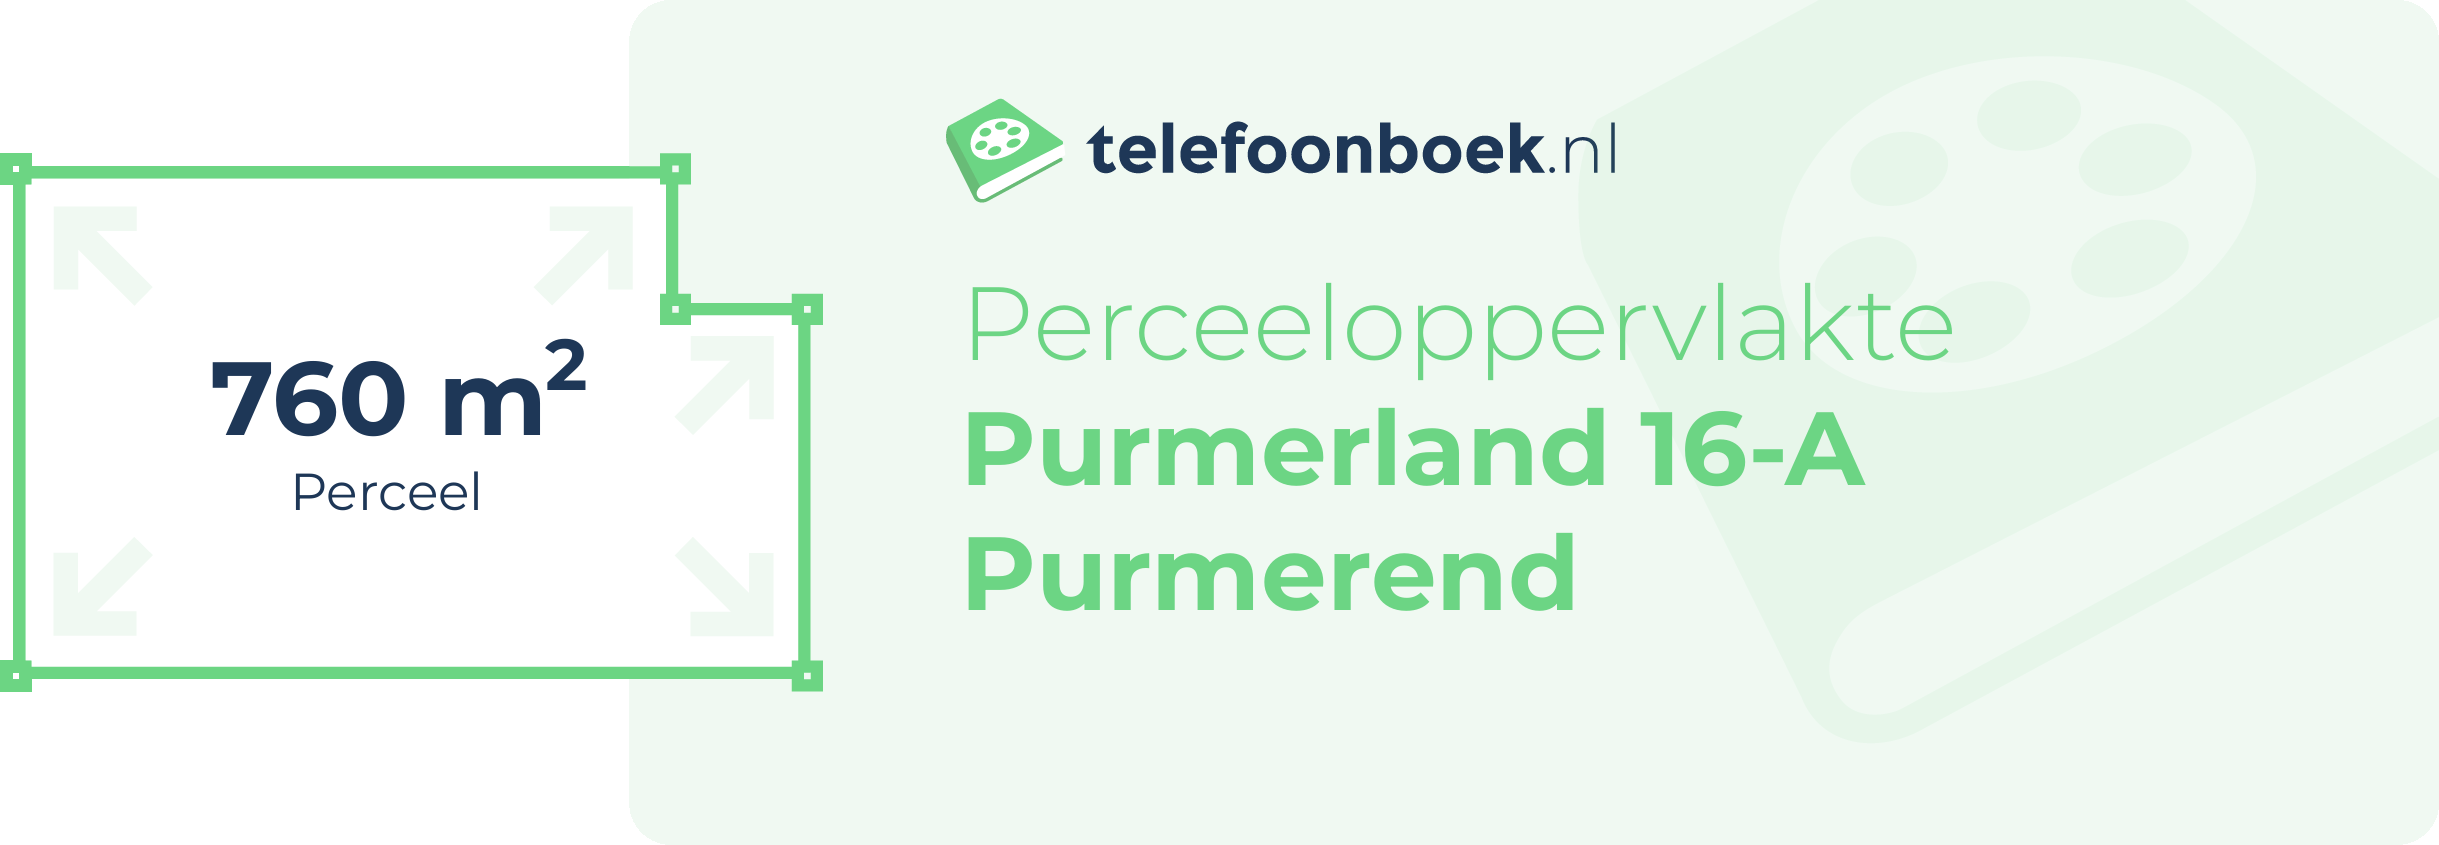 Perceeloppervlakte Purmerland 16-A Purmerend